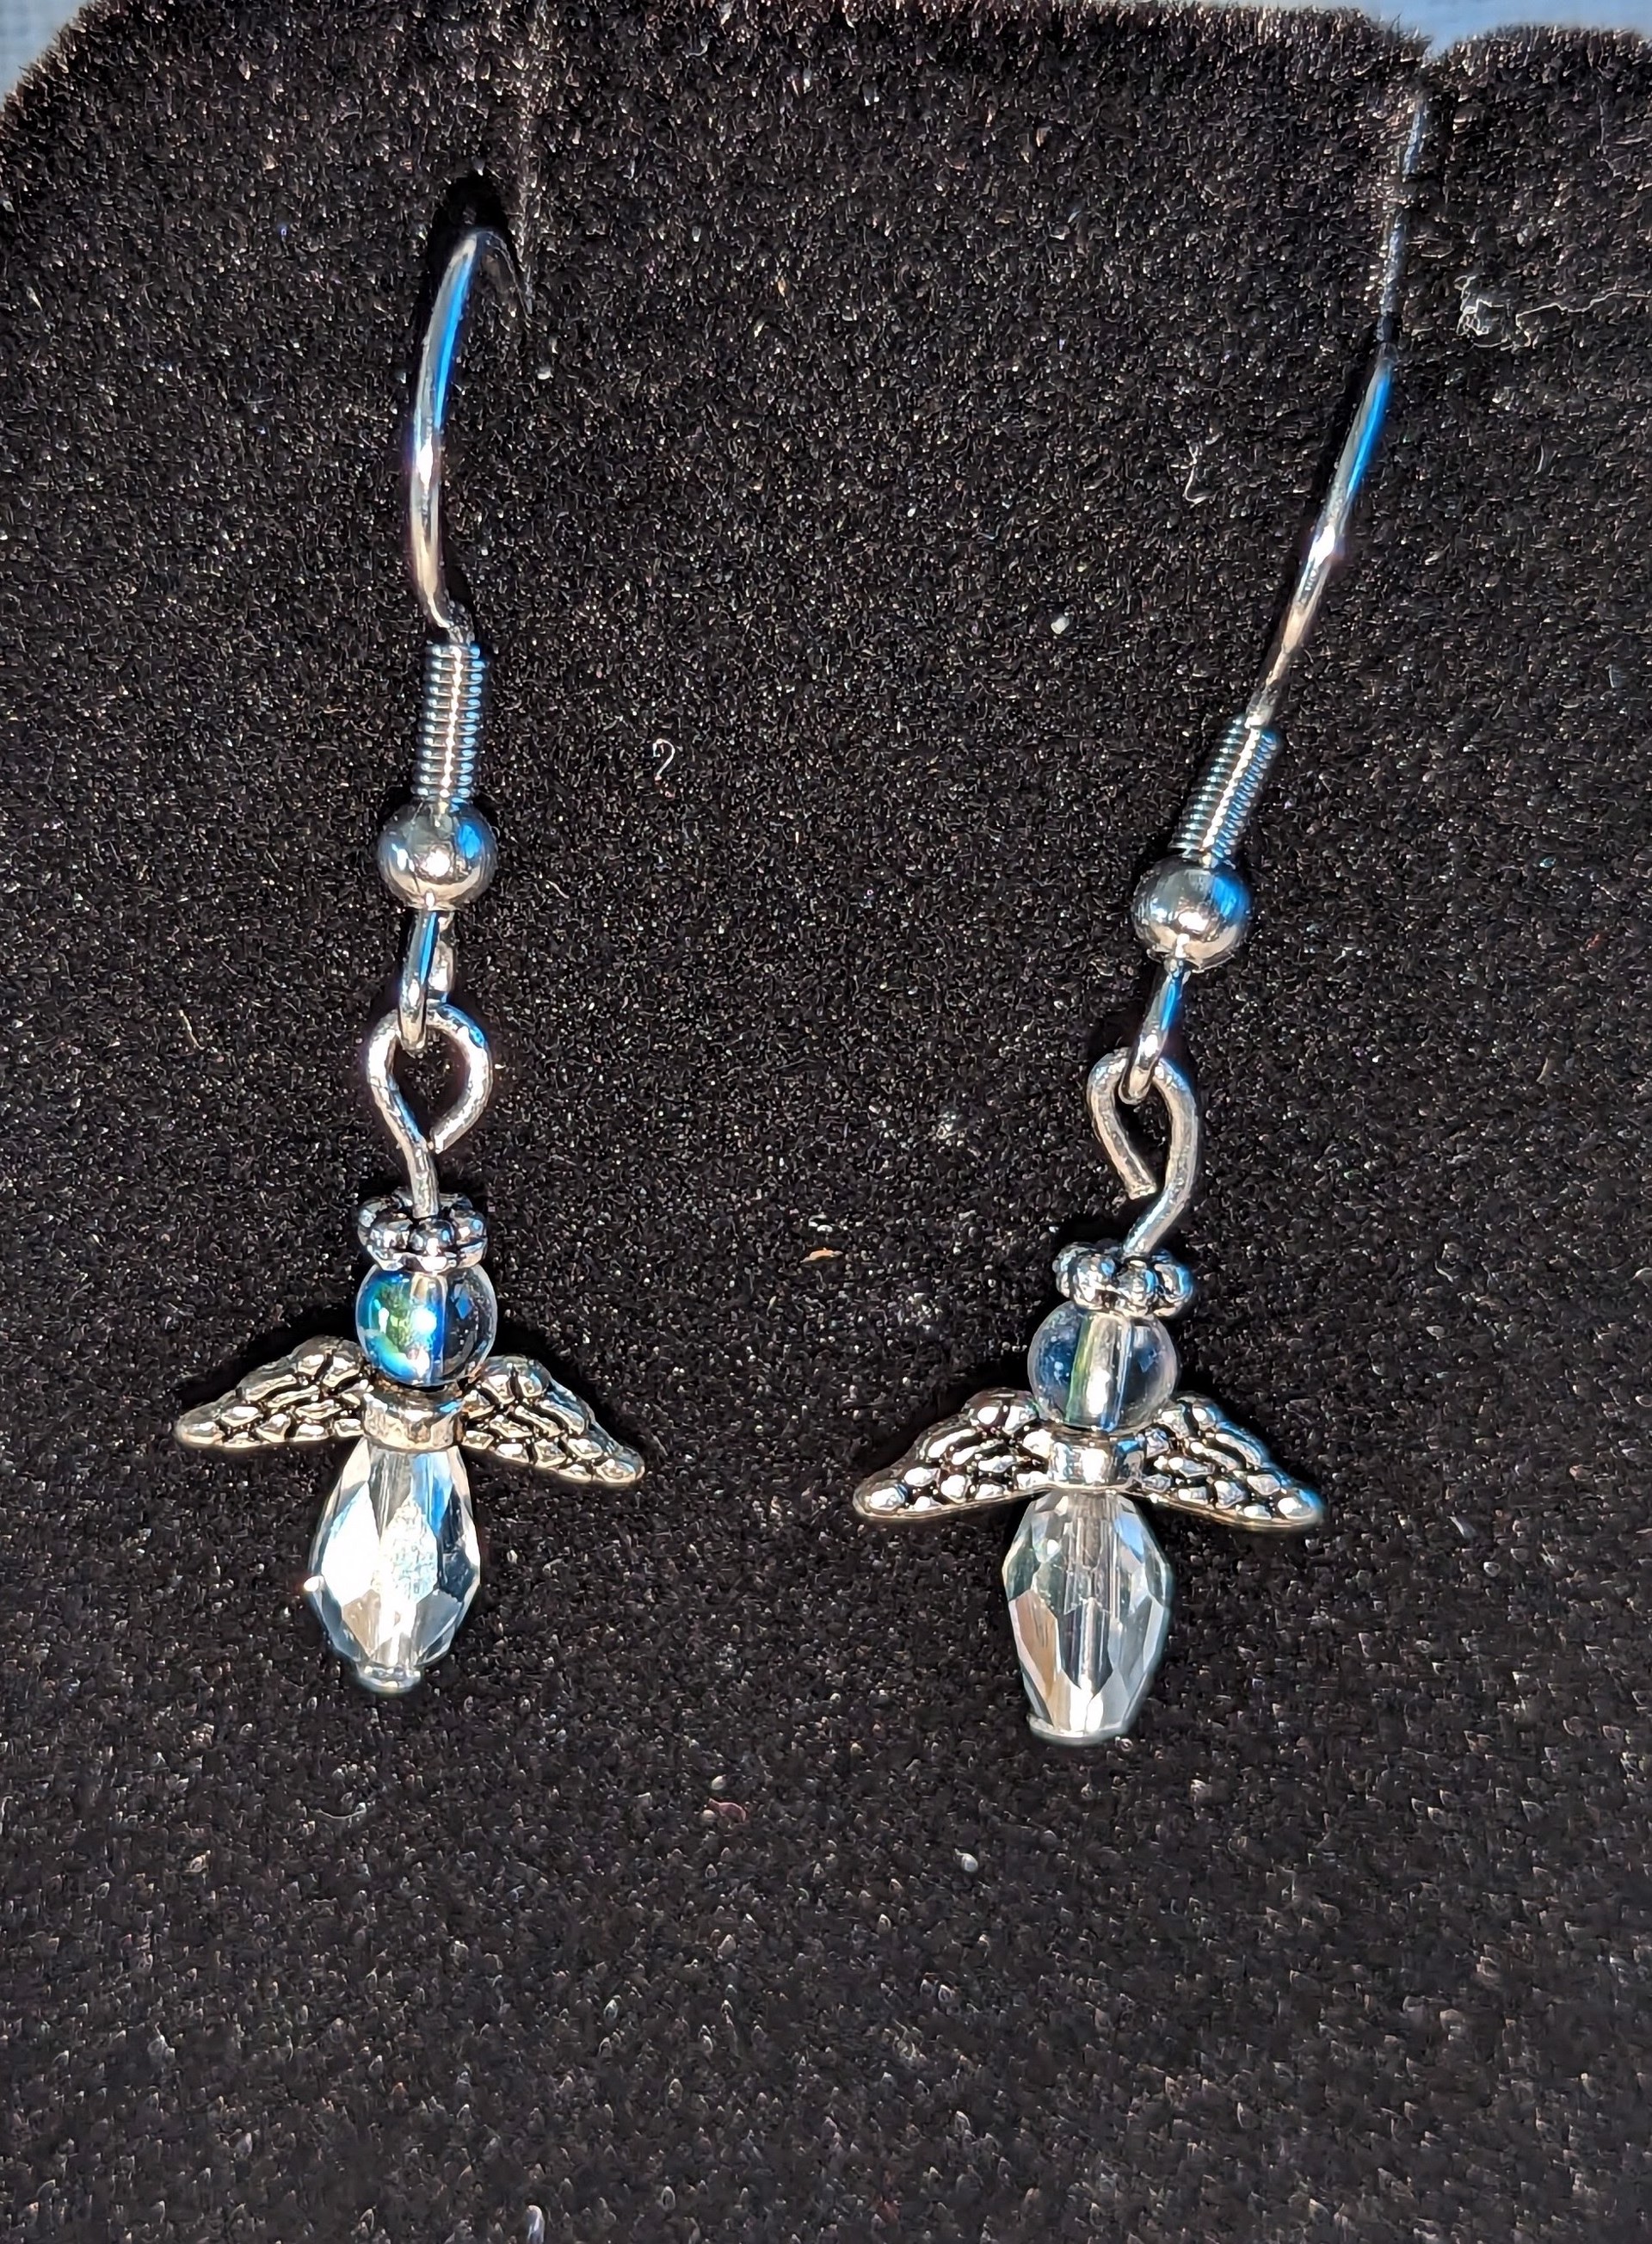 Clear Angel earrings by Betty Binder